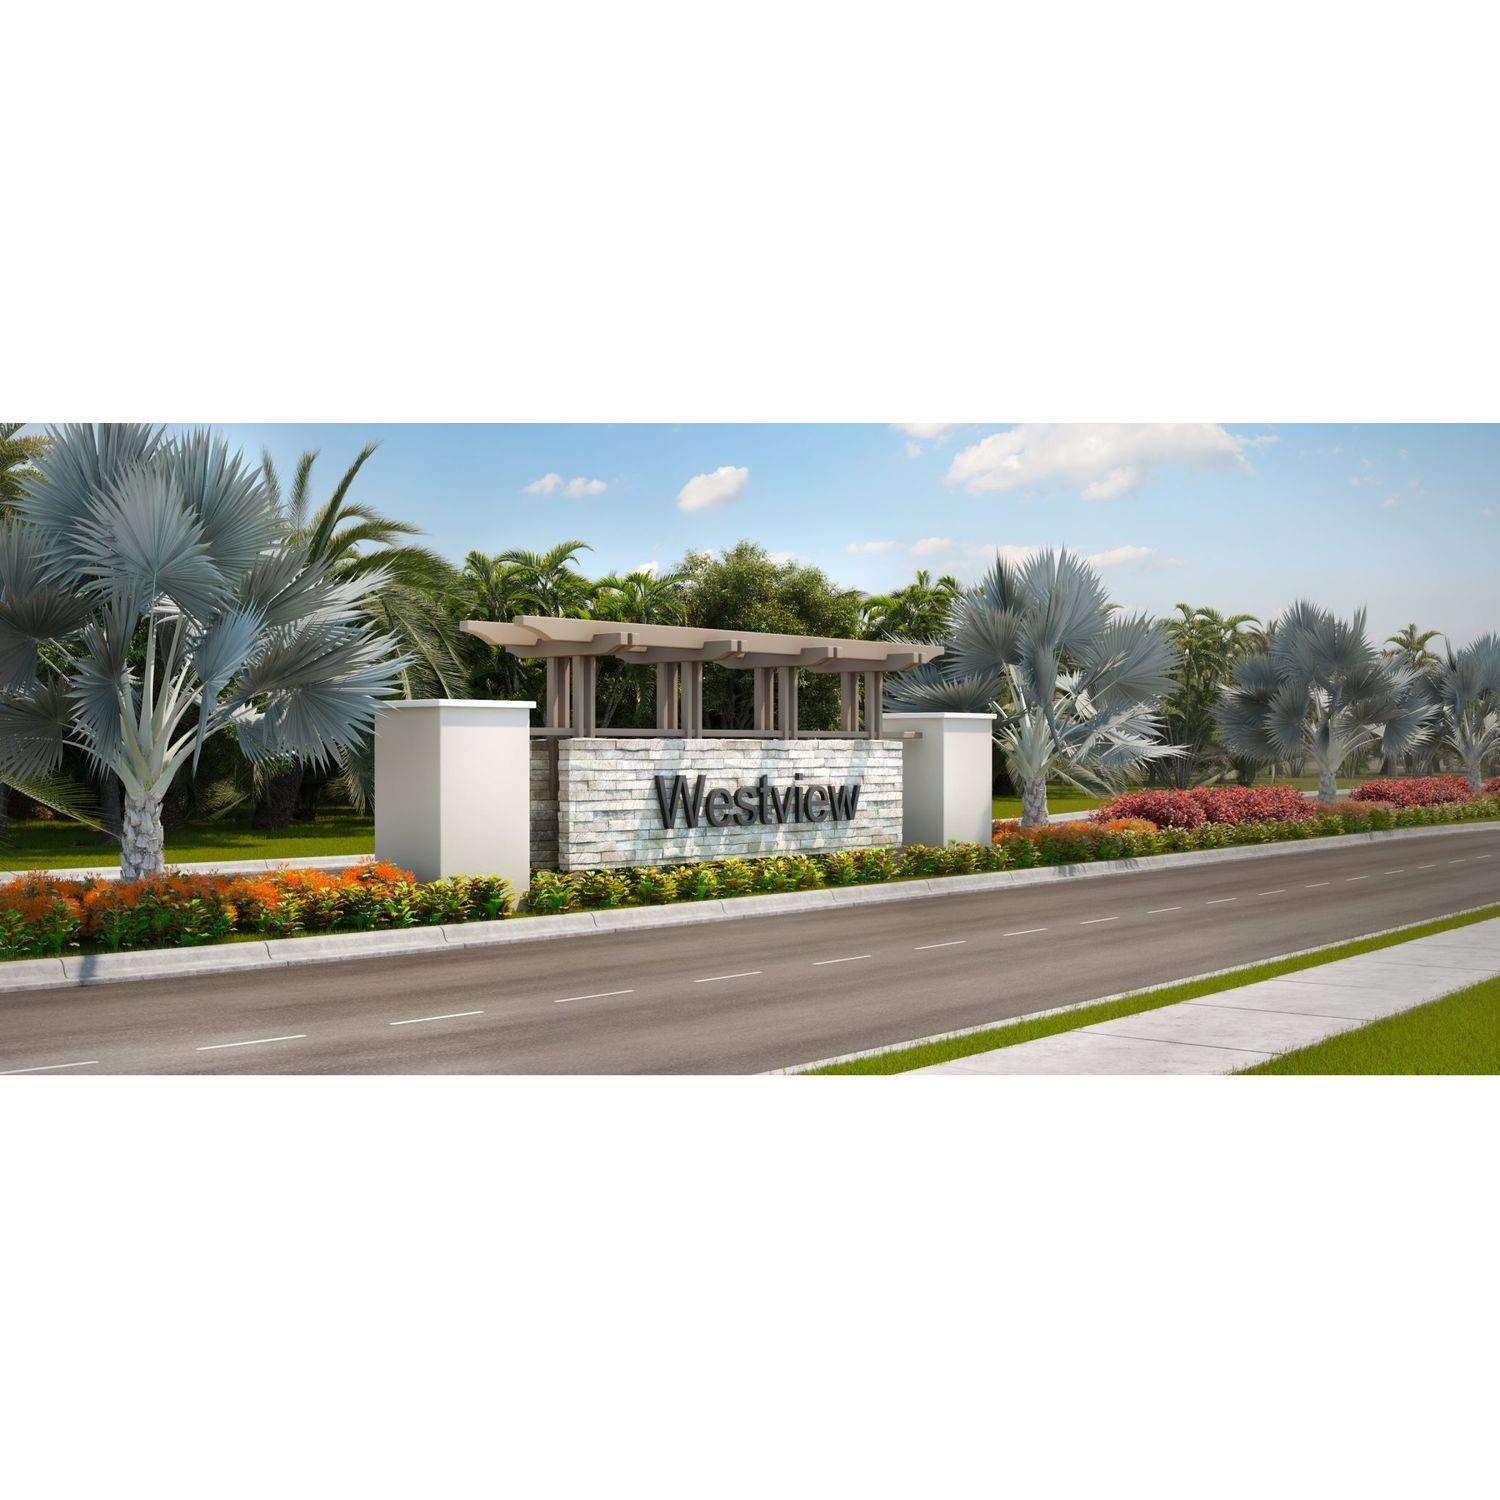 4. Westview - Nantucket Collection edificio a 2601 NW 119 Street, Miami, FL 33167